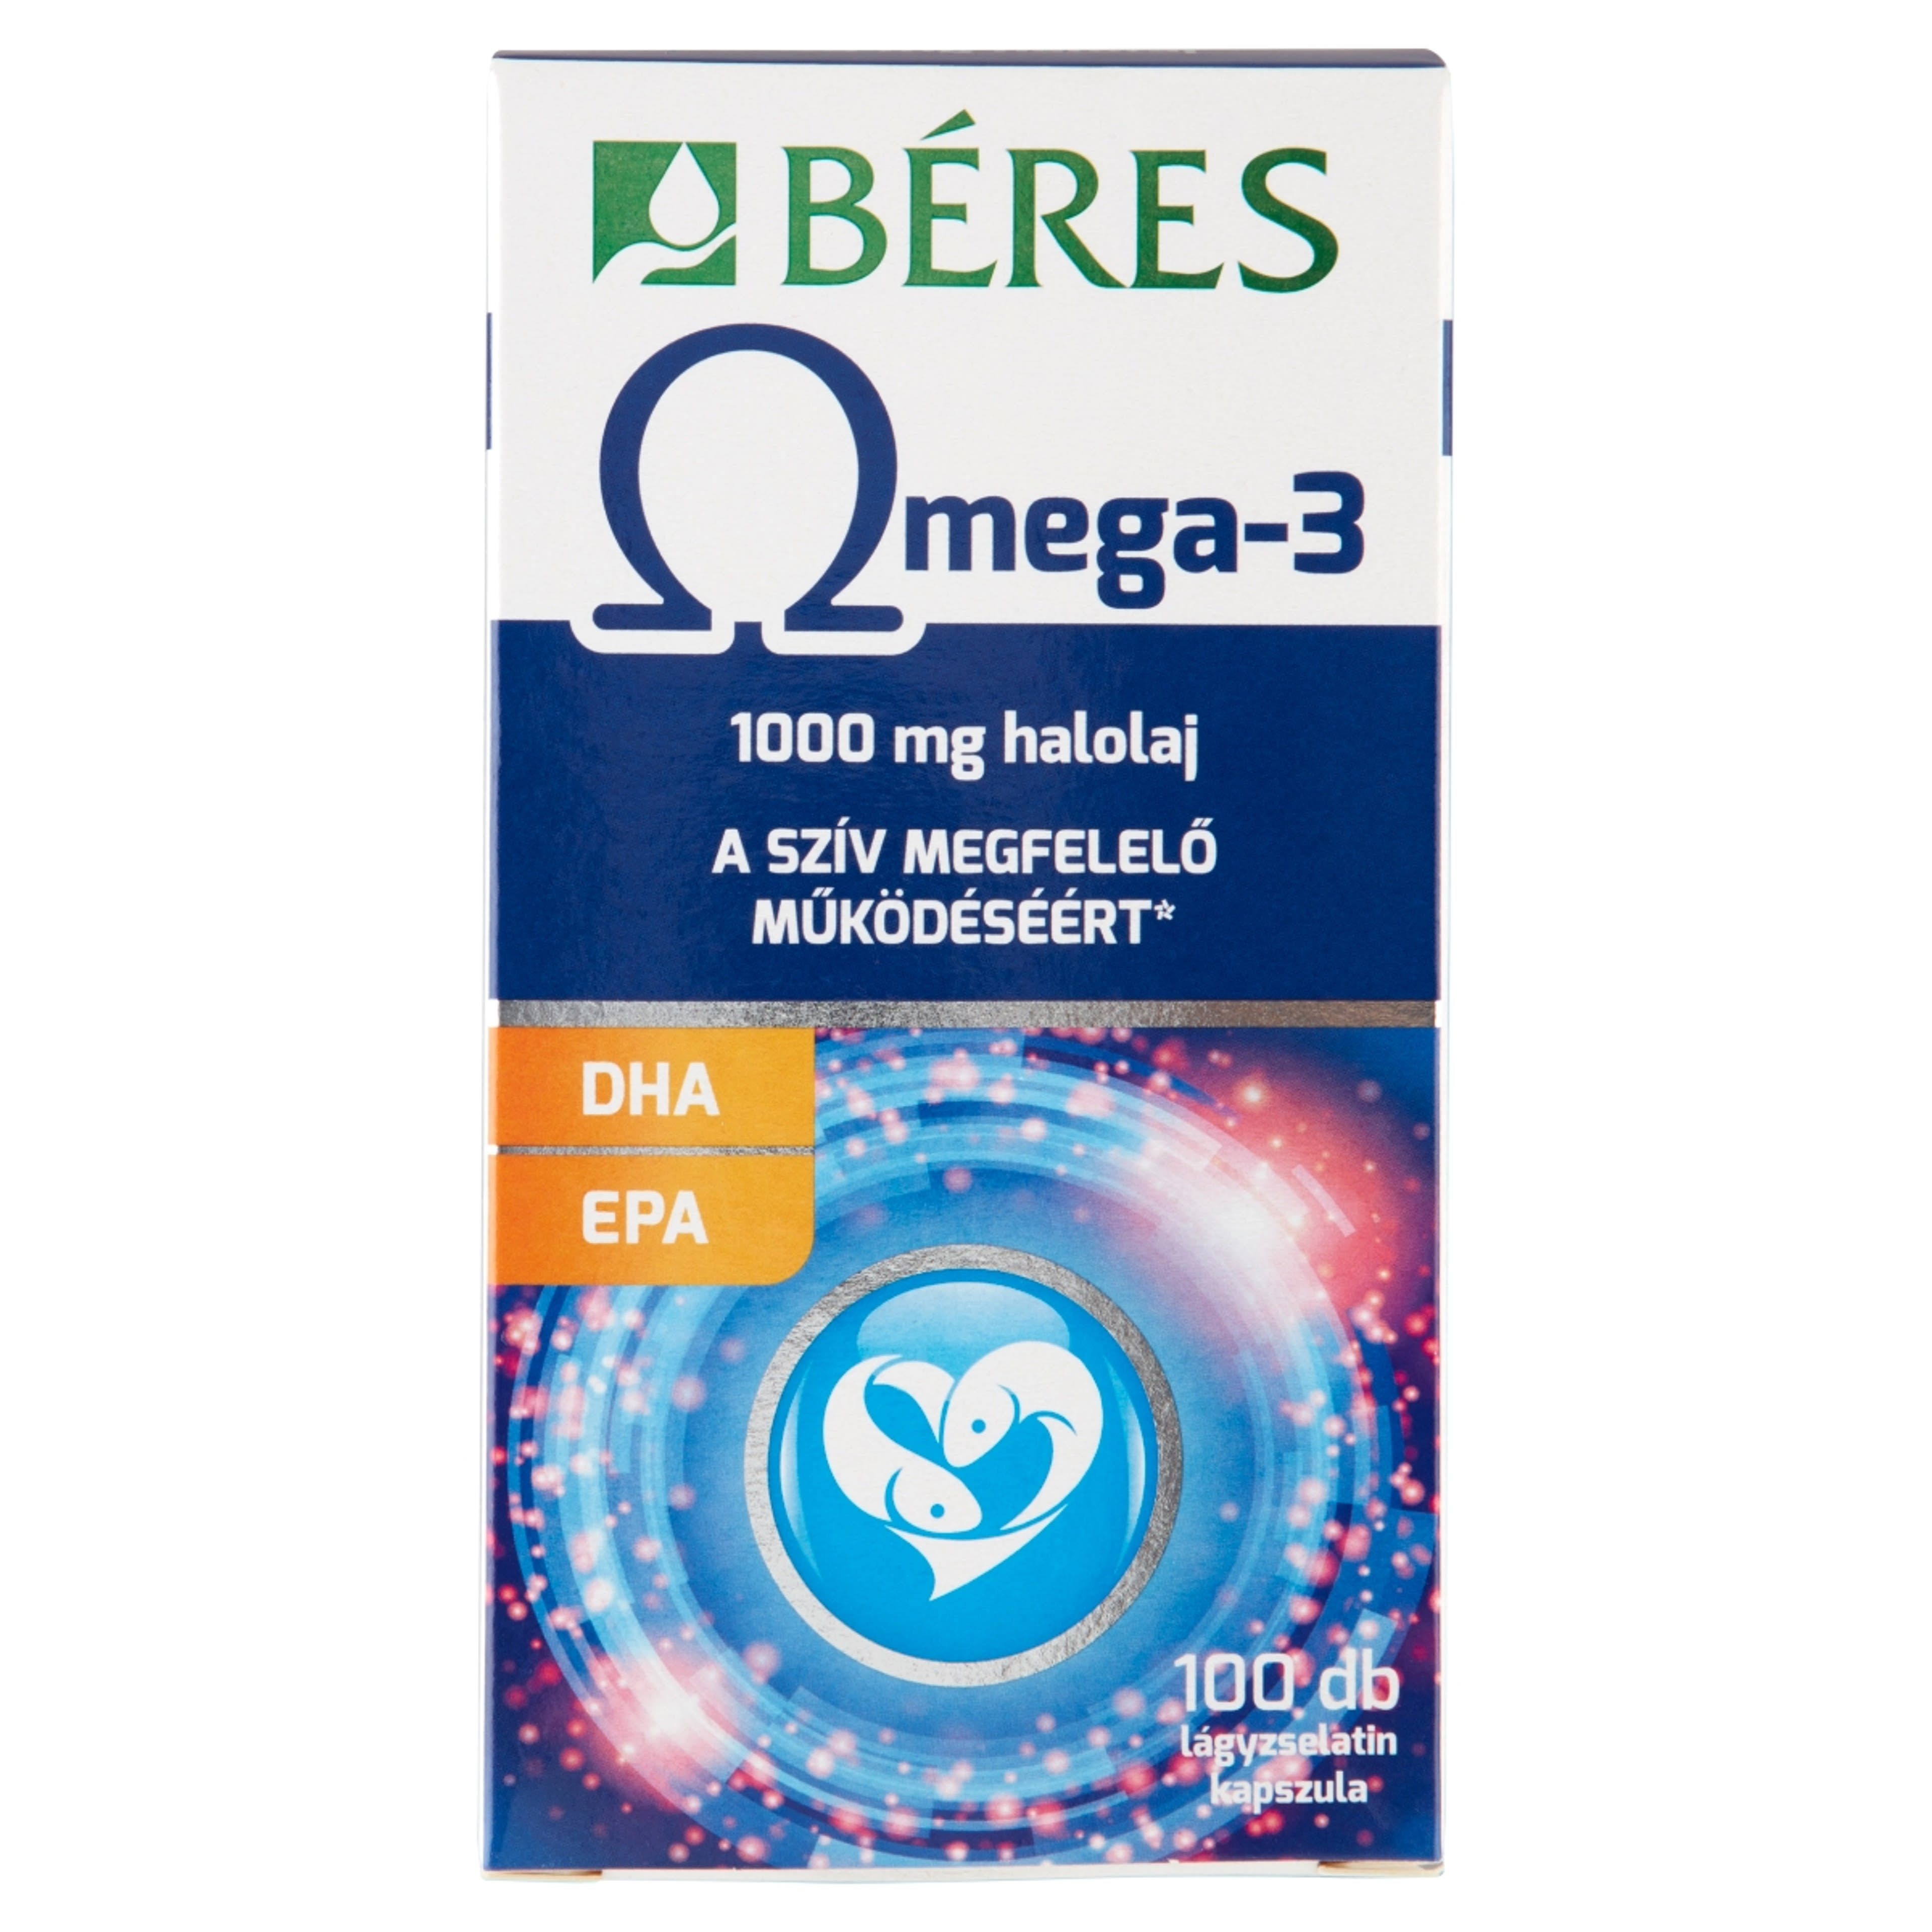 Béres Omega 3 lágyzselatin kapszula - 100 db-1